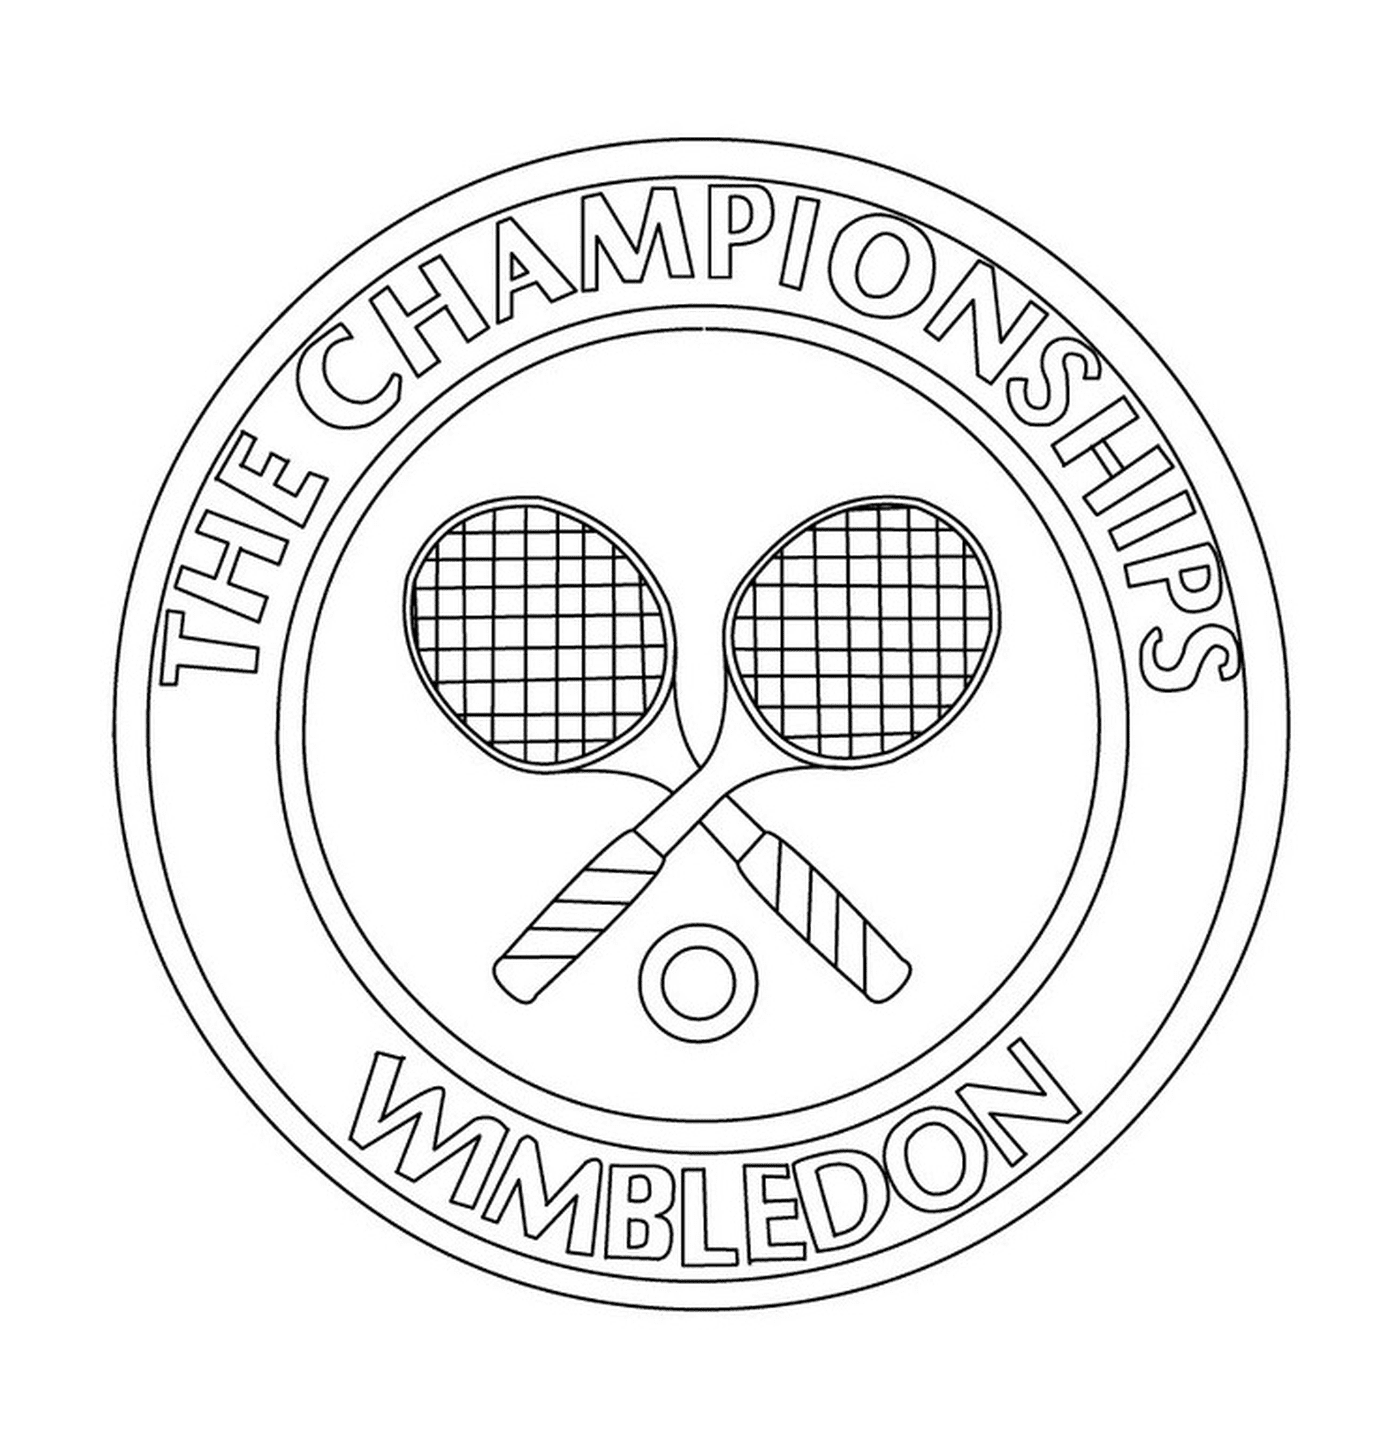  Logo tennis I Campionati Wimbledon 